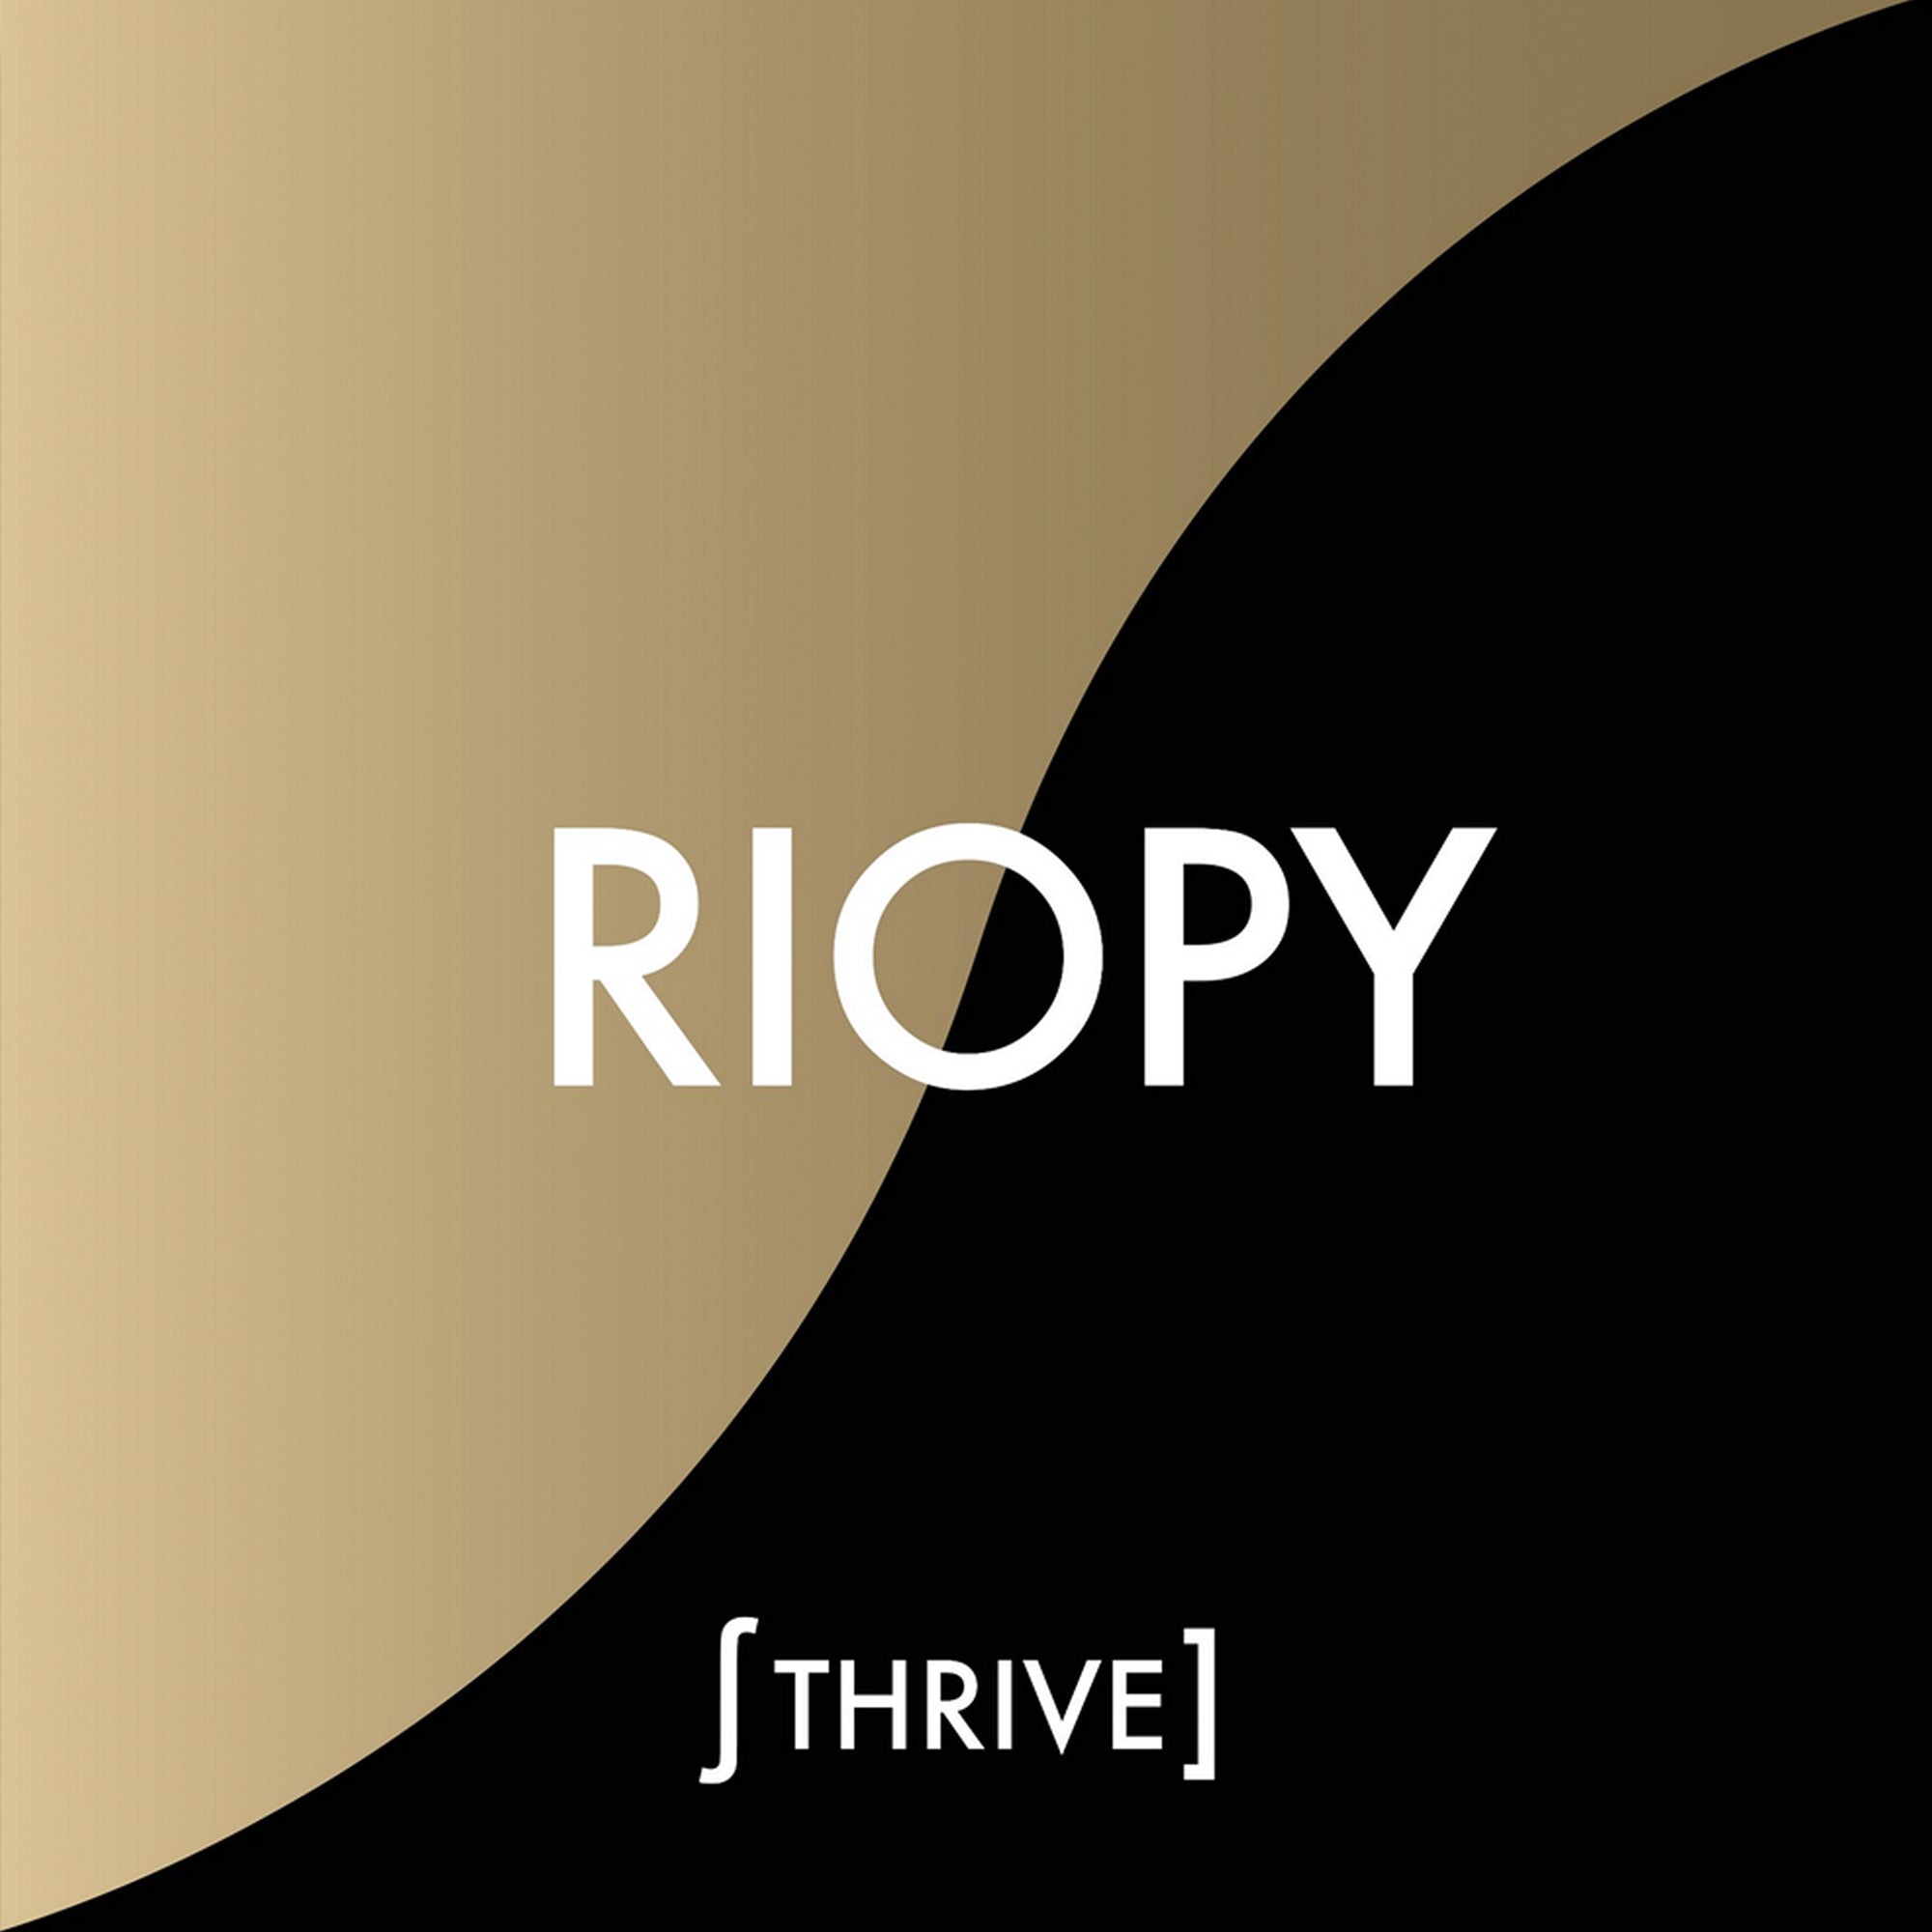 RIOPY's THRIVE album